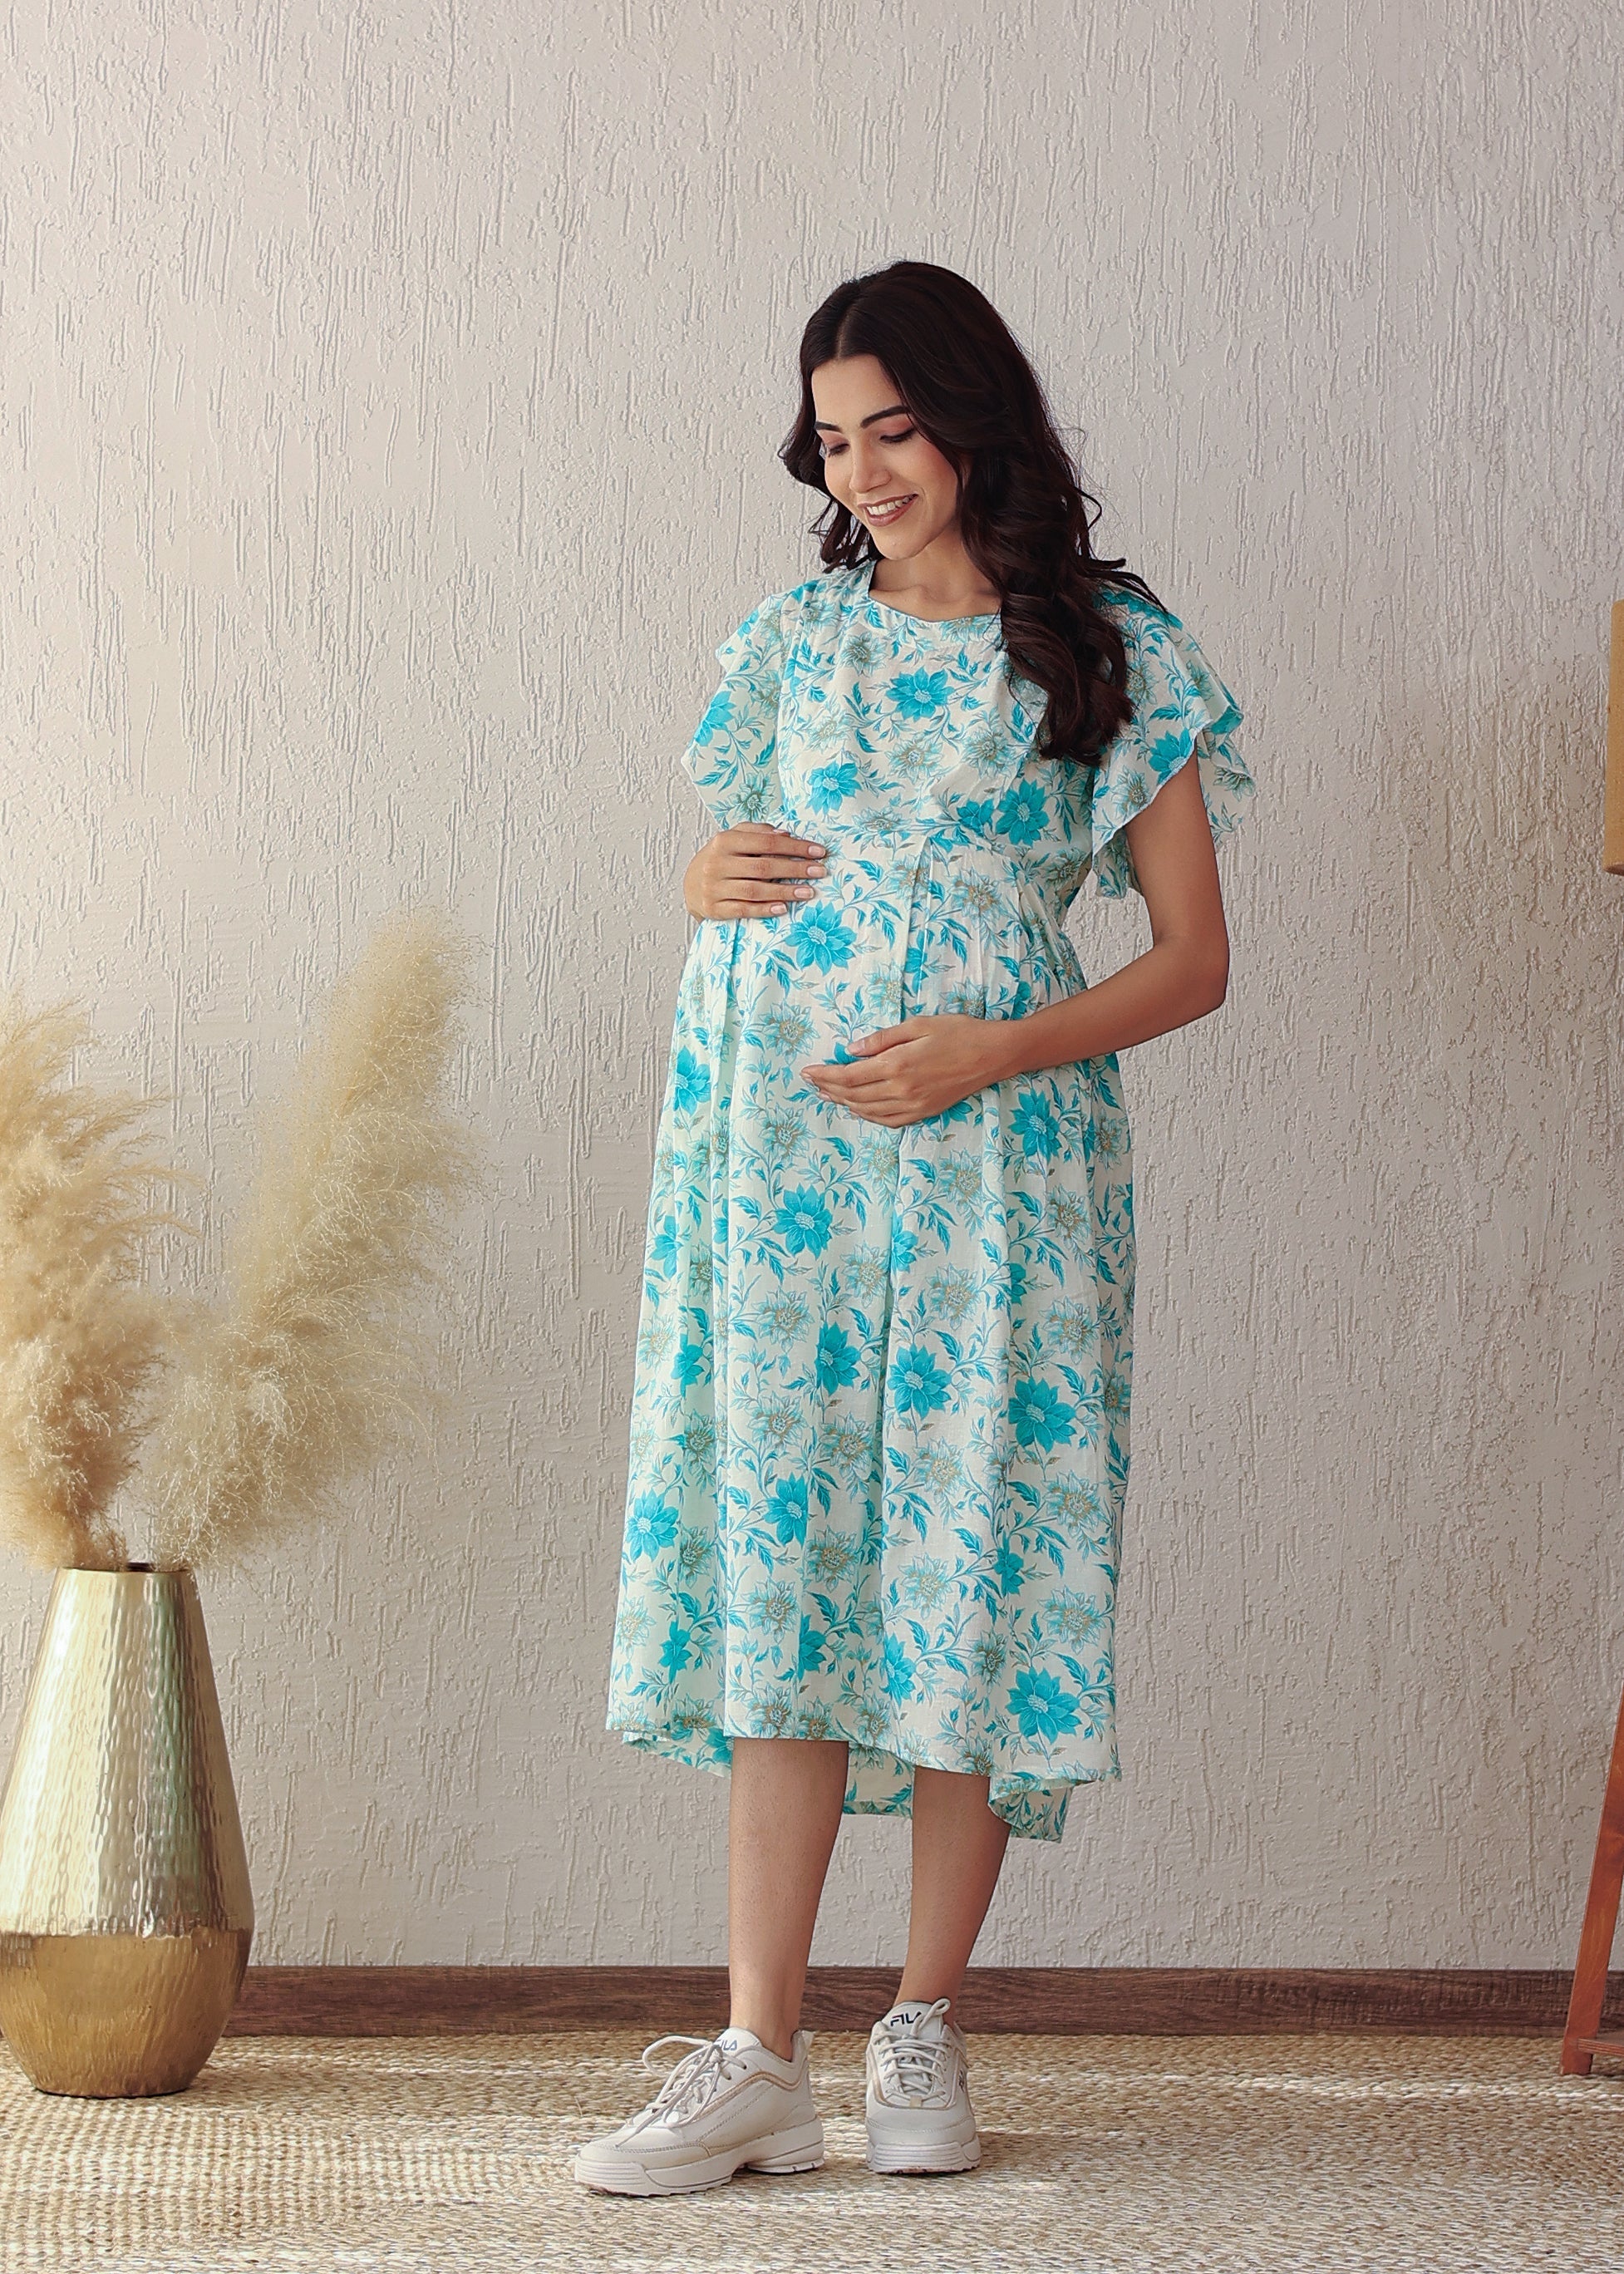 Plus size Blue Floral Cotton Nursing Midi Dress: Stylish Comfort